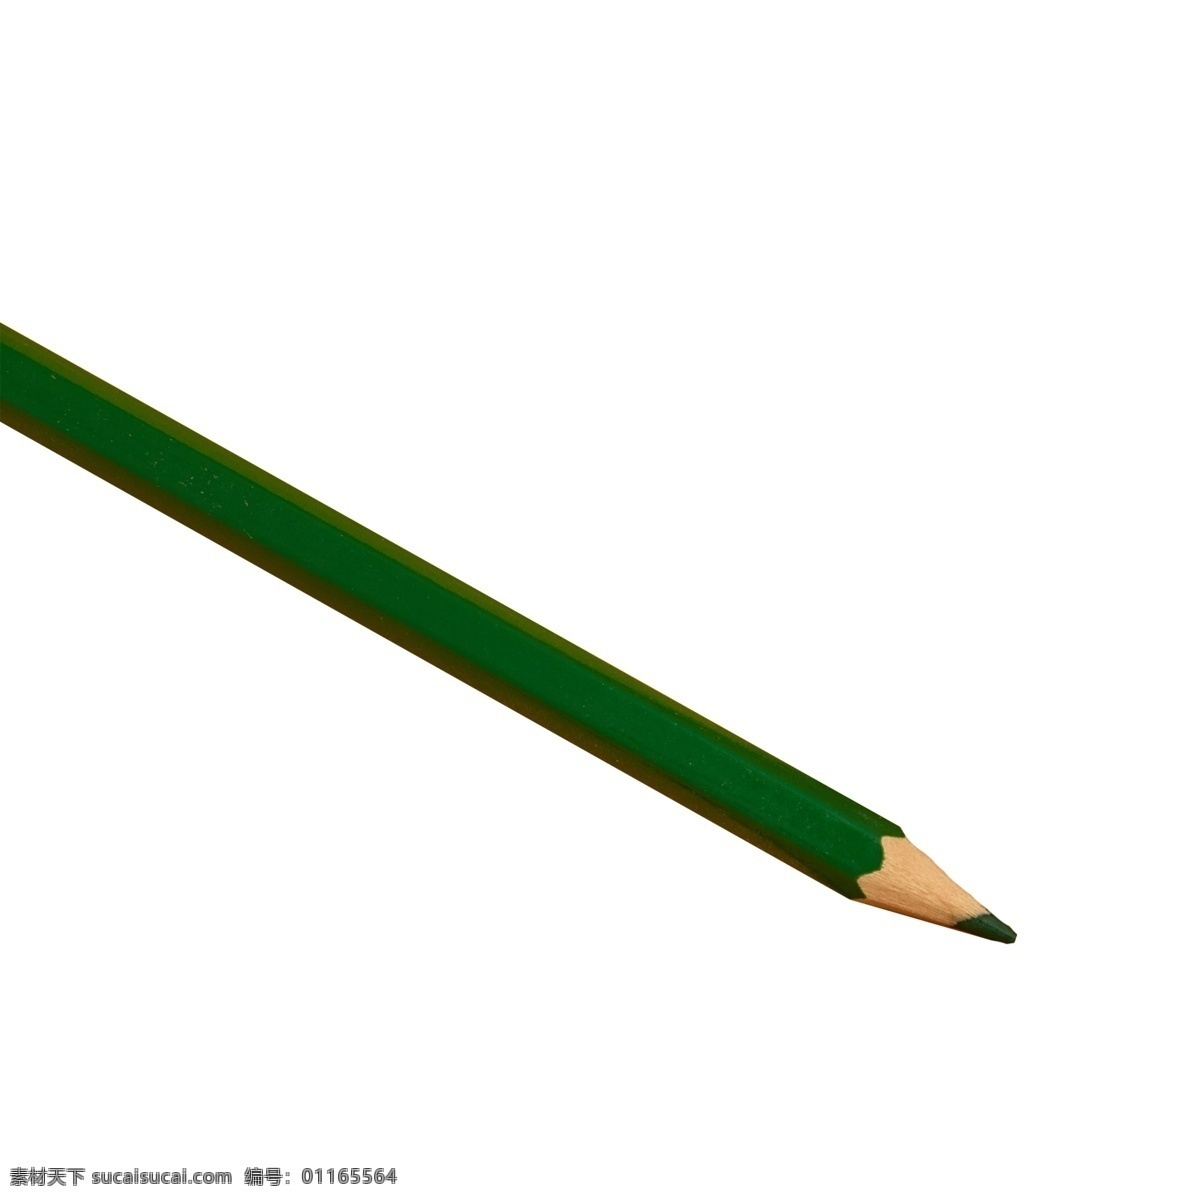 绿色彩笔 铅笔 水彩笔 画笔 实物 实物免扣 实物下载